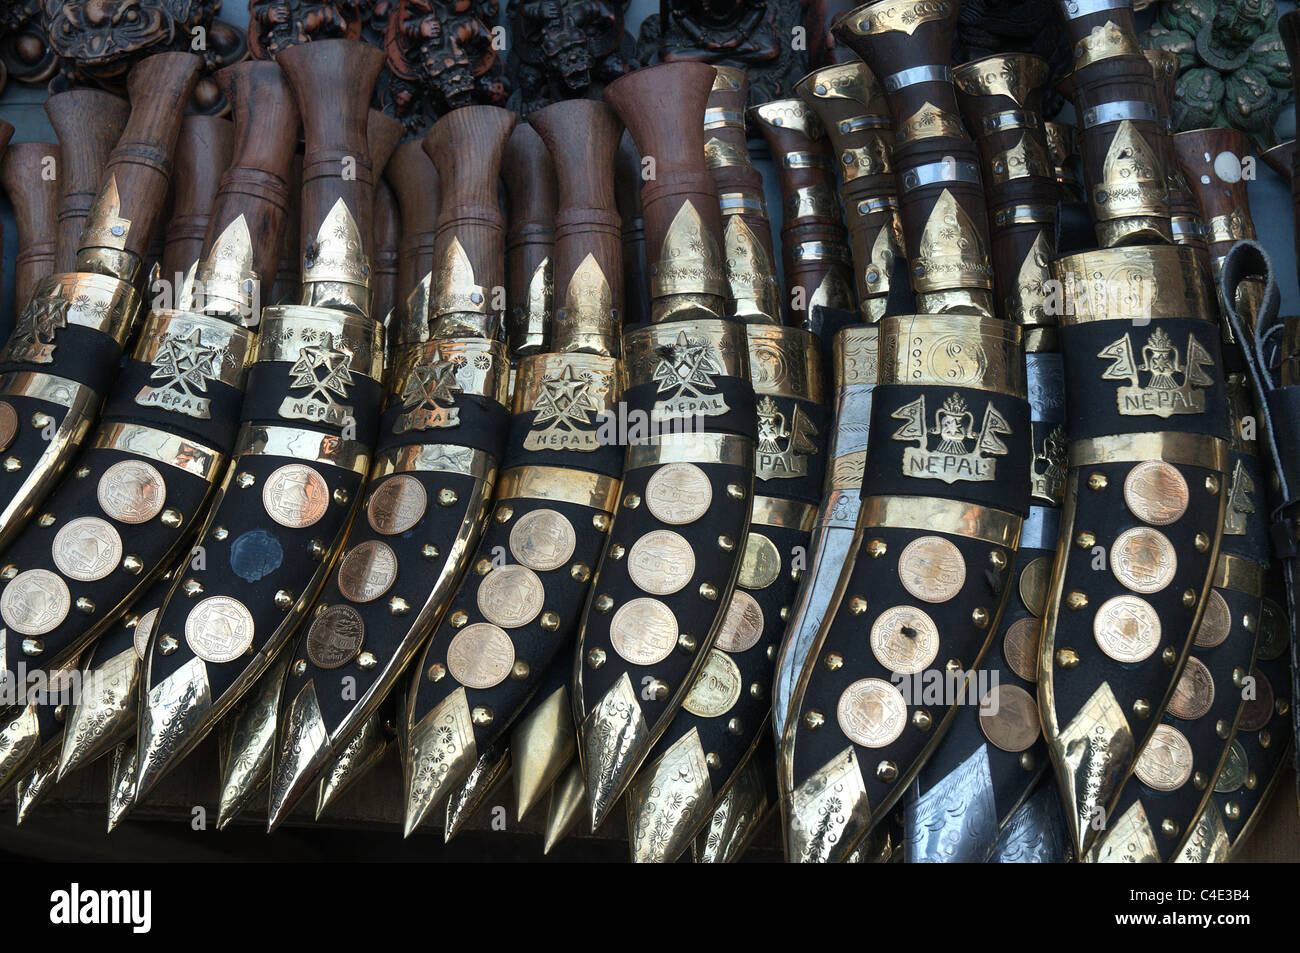 Eine Auswahl der Khukri Messer zum Verkauf in Nepal Stockfoto